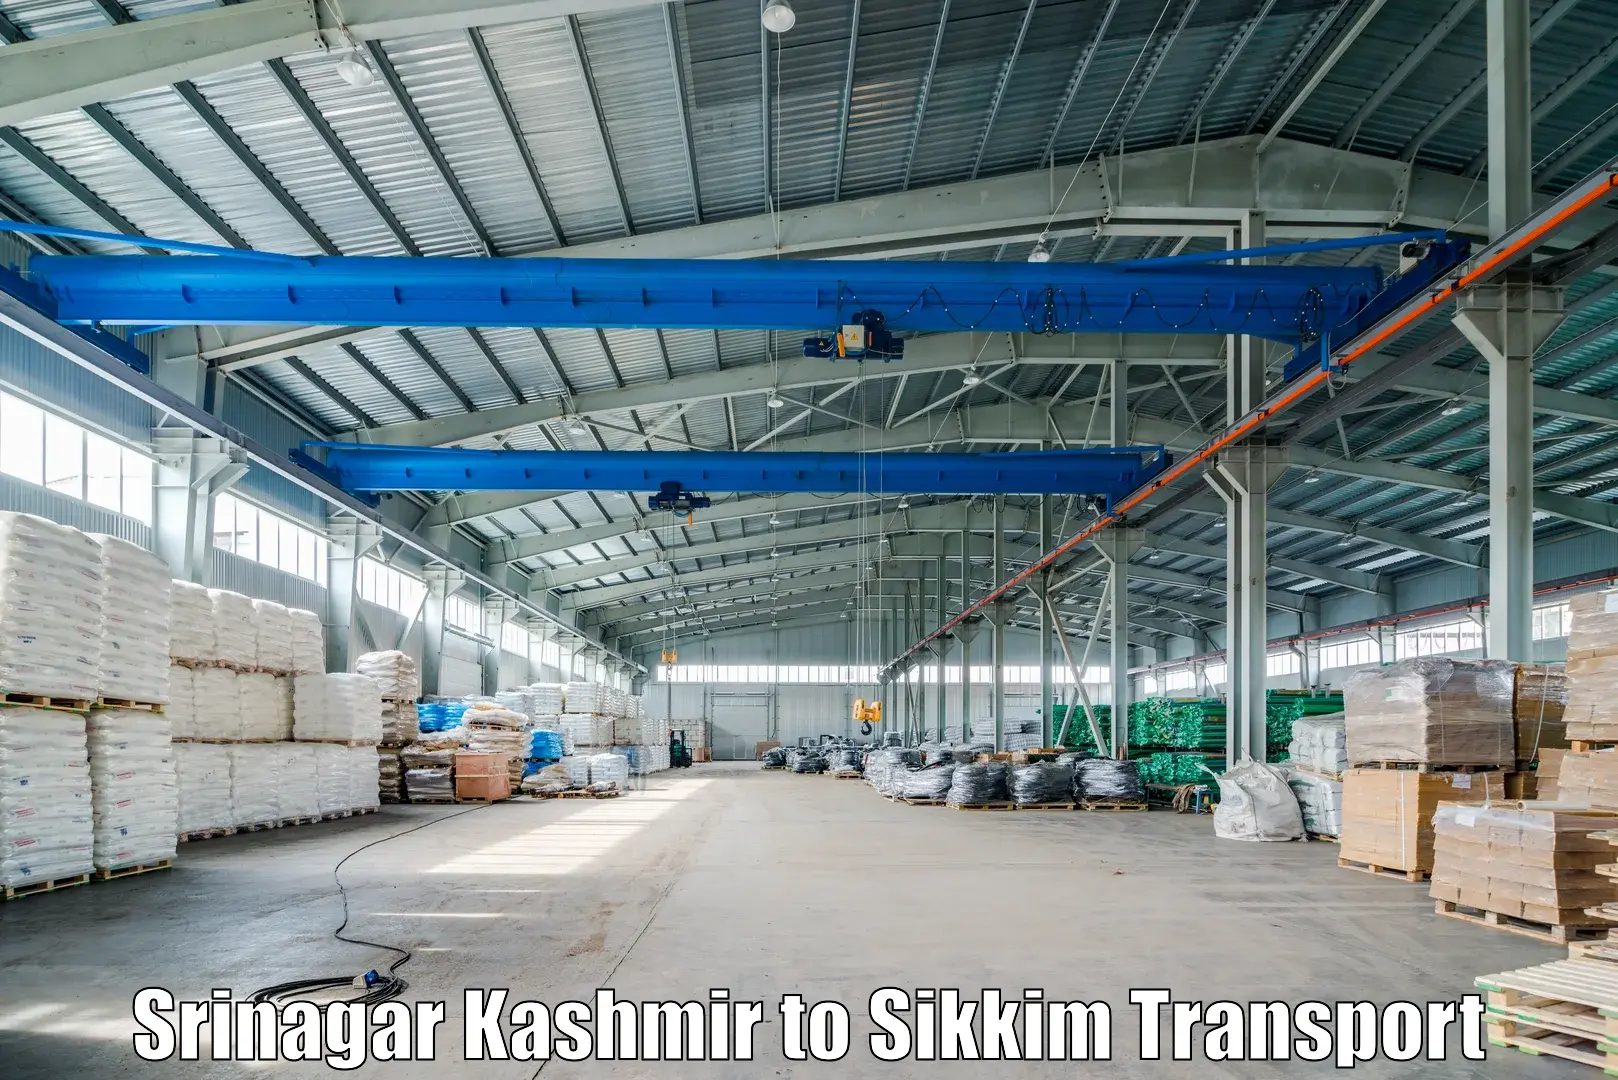 Air freight transport services Srinagar Kashmir to Gangtok